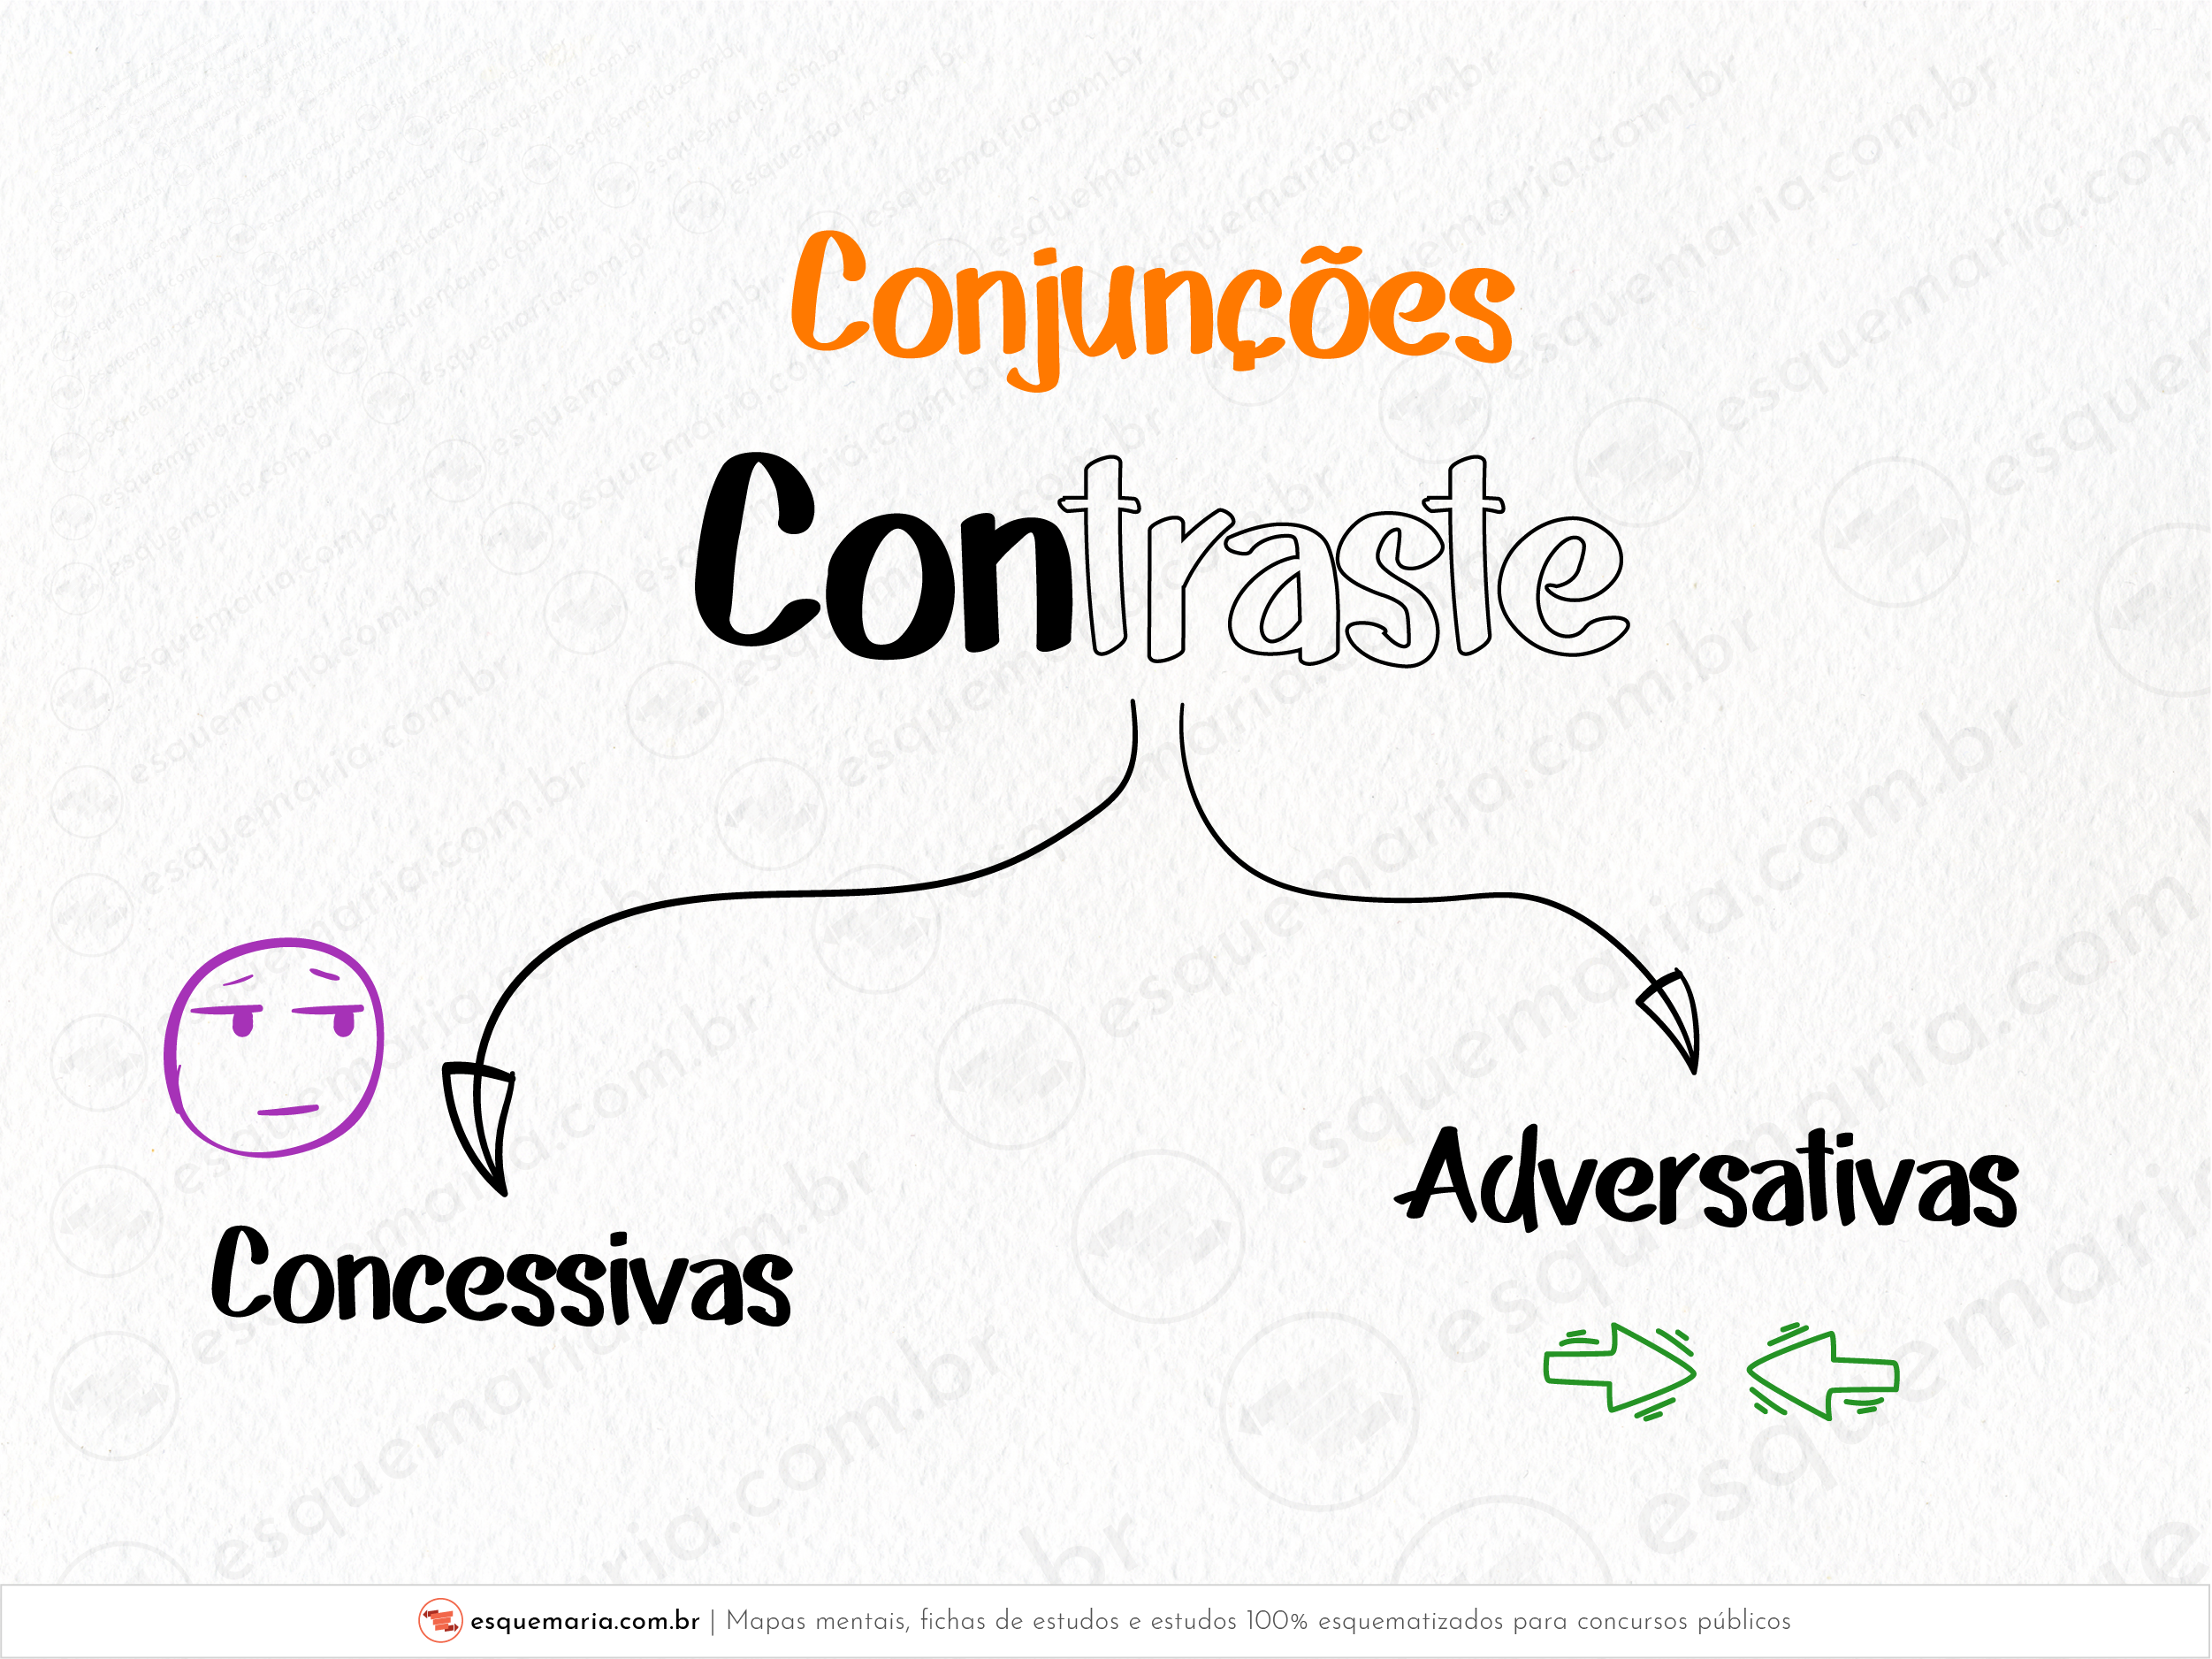 Conjunções contraste-01